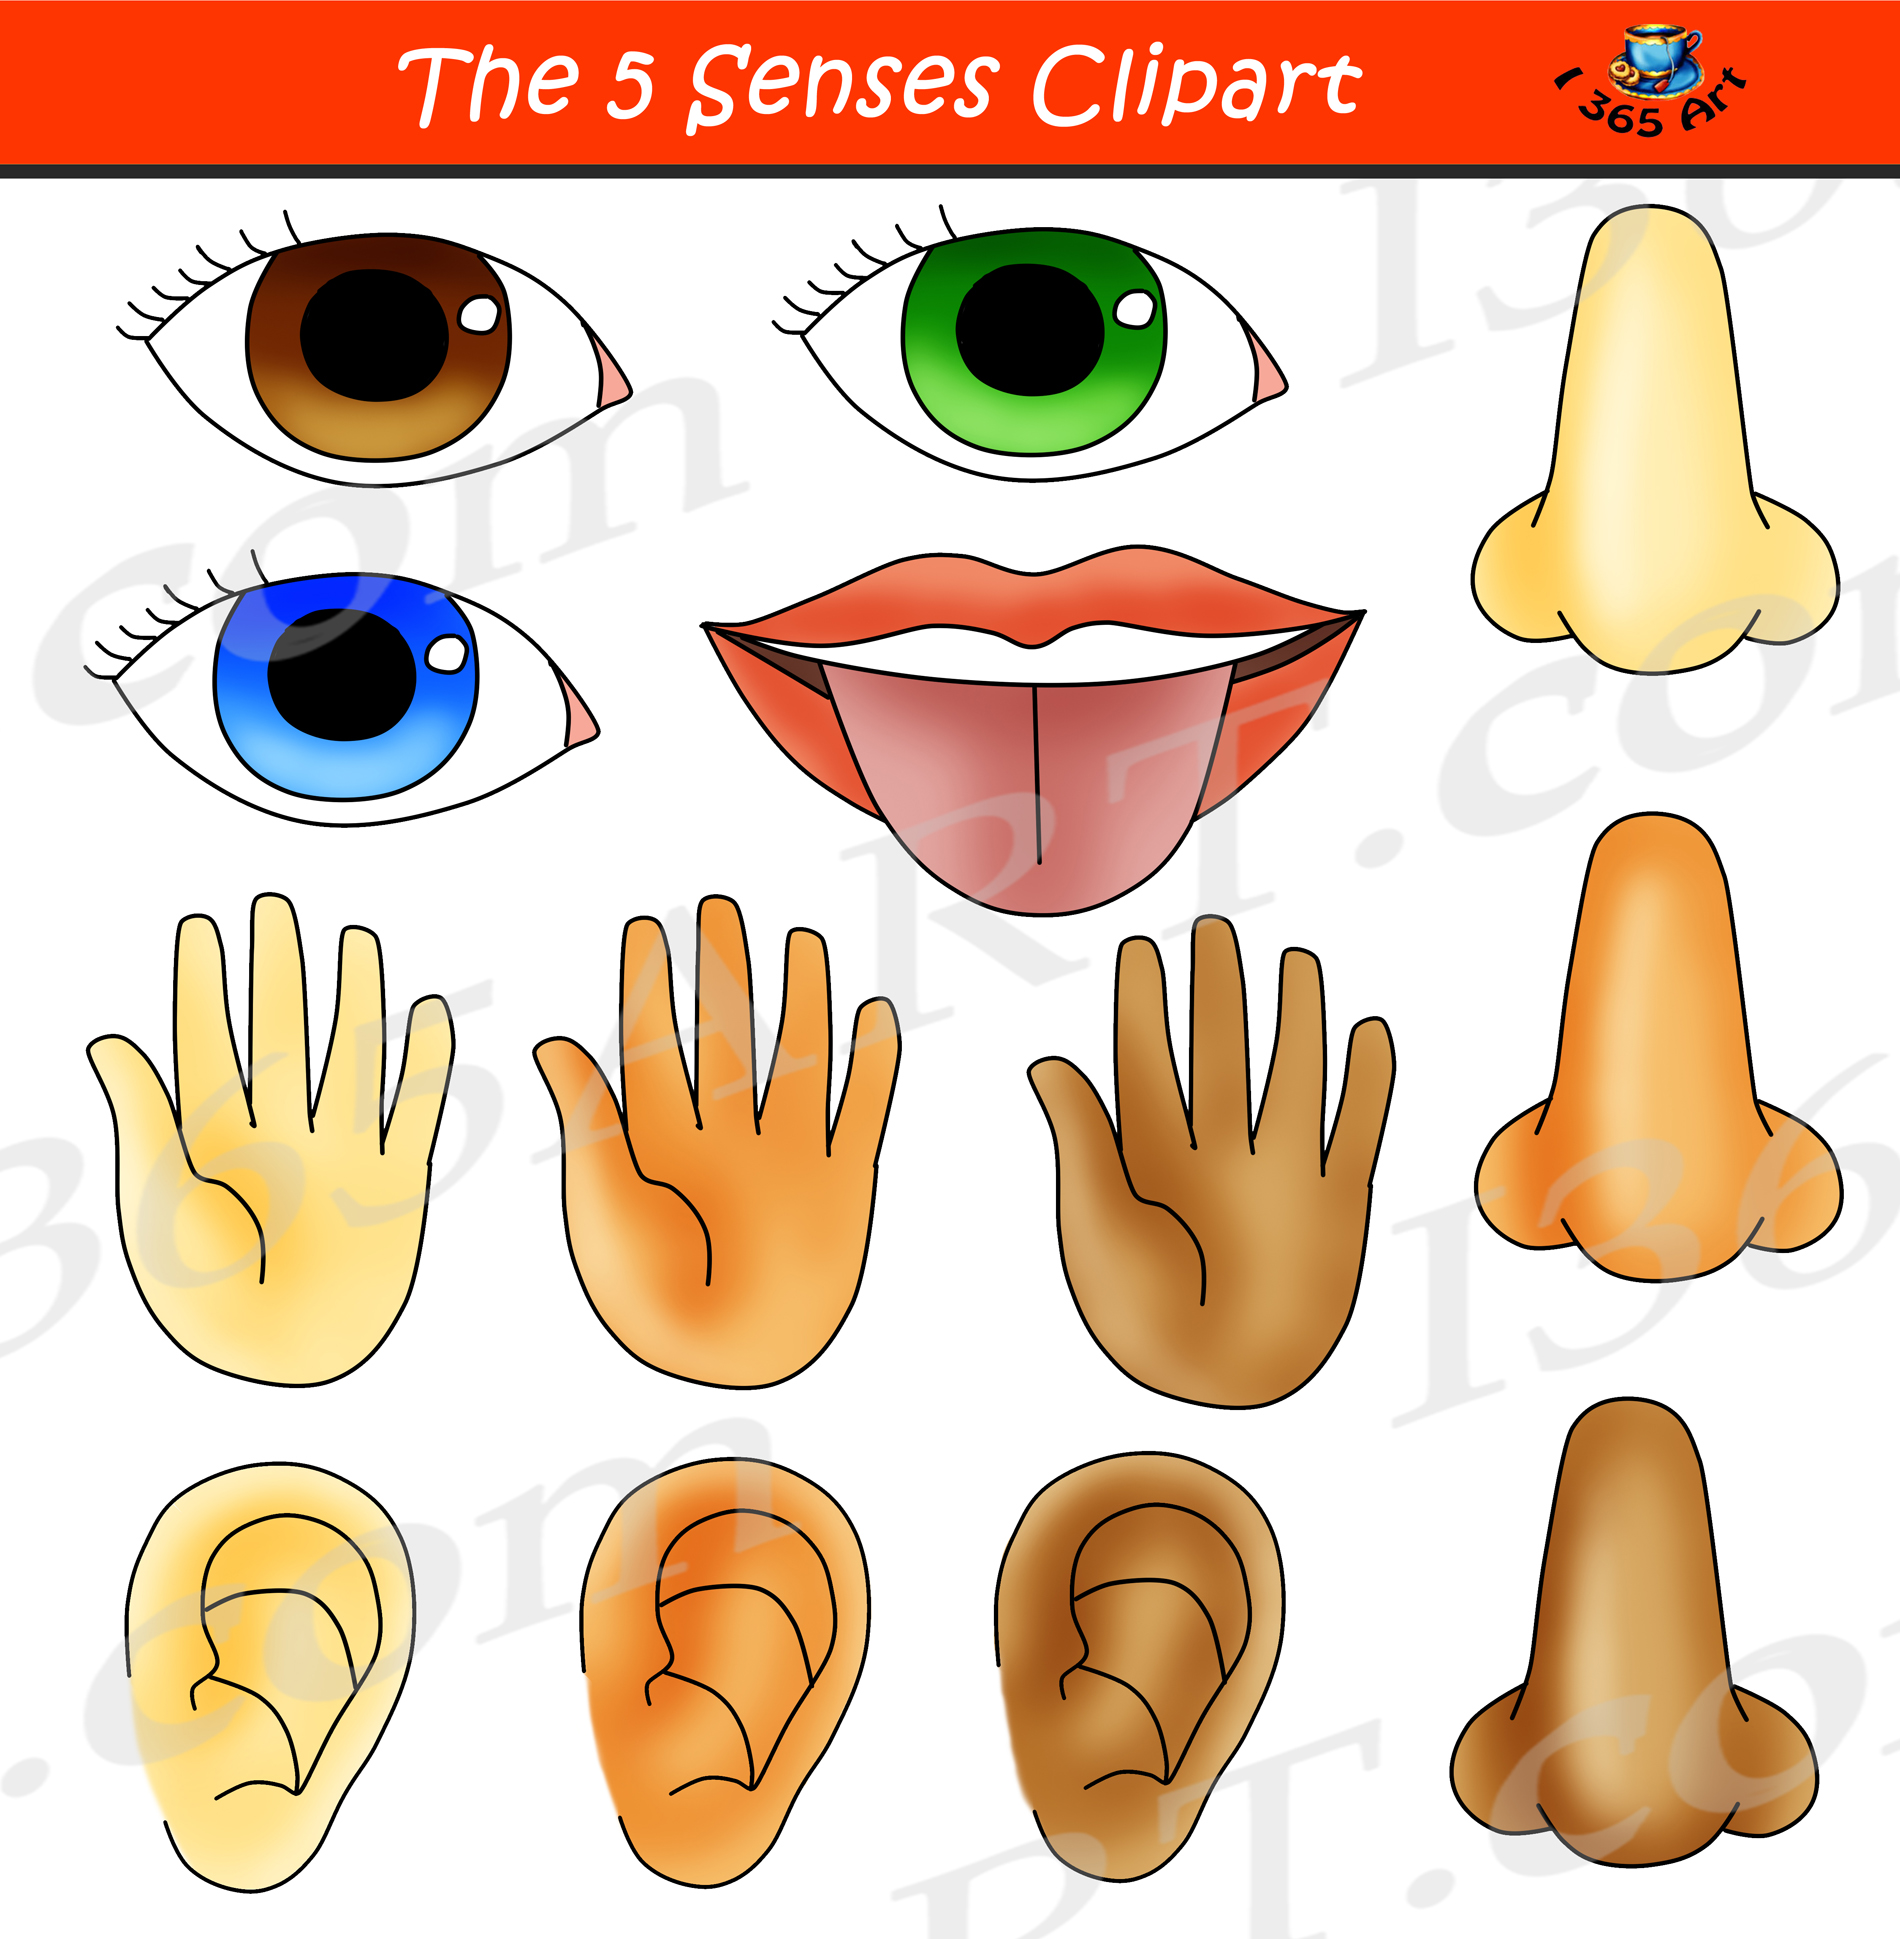  bundle graphic set. 5 senses clipart hand